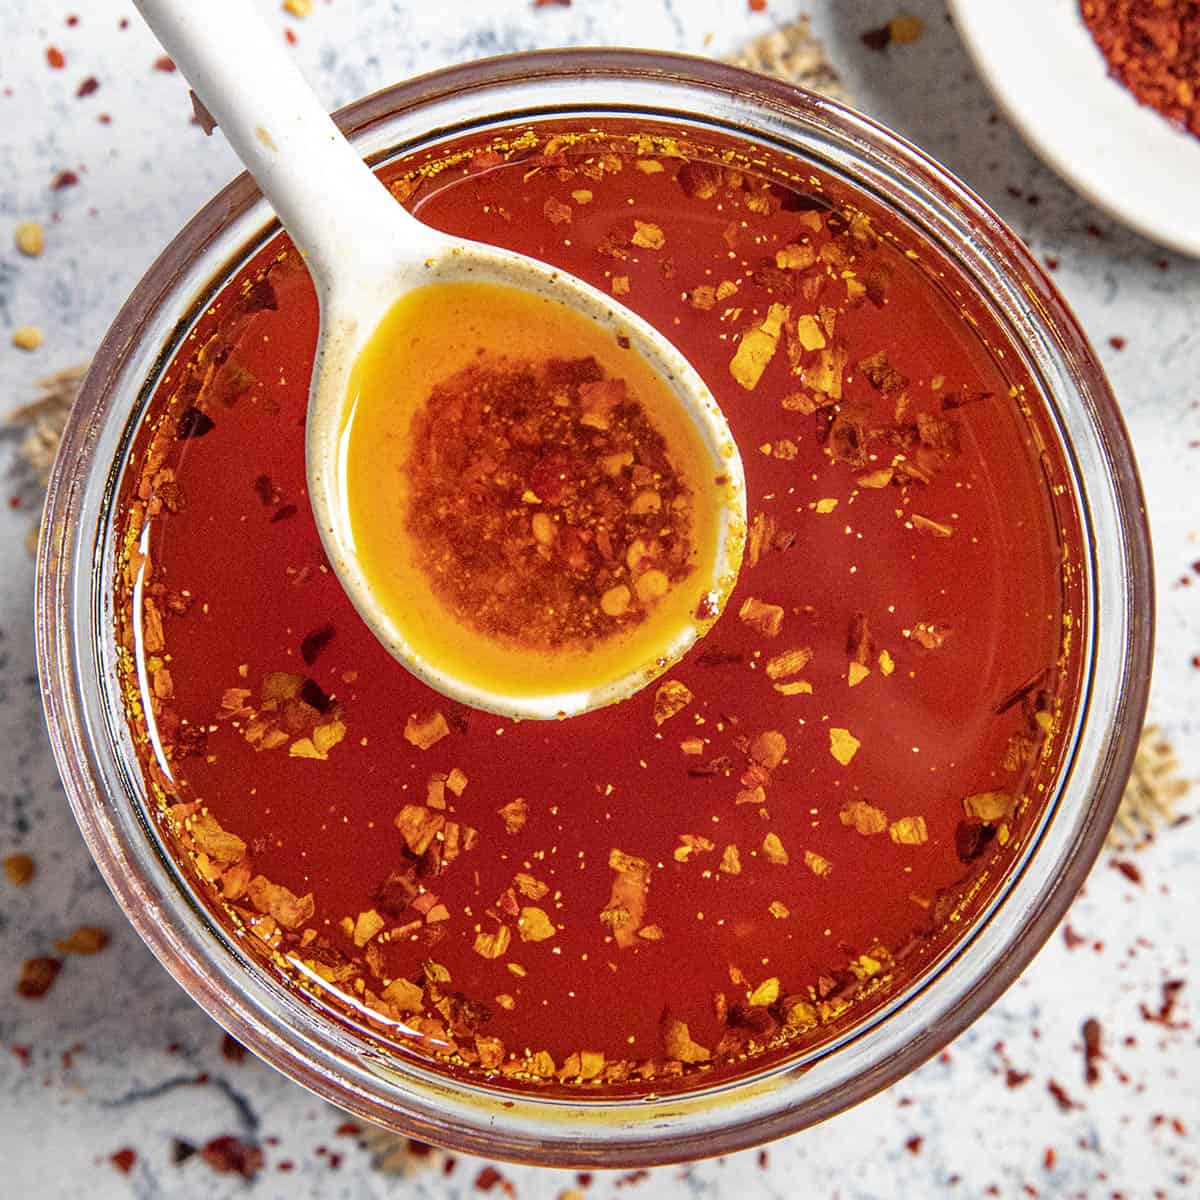 How to Make Chili Oil (Chili Oil Recipe) - Chili Pepper Madness